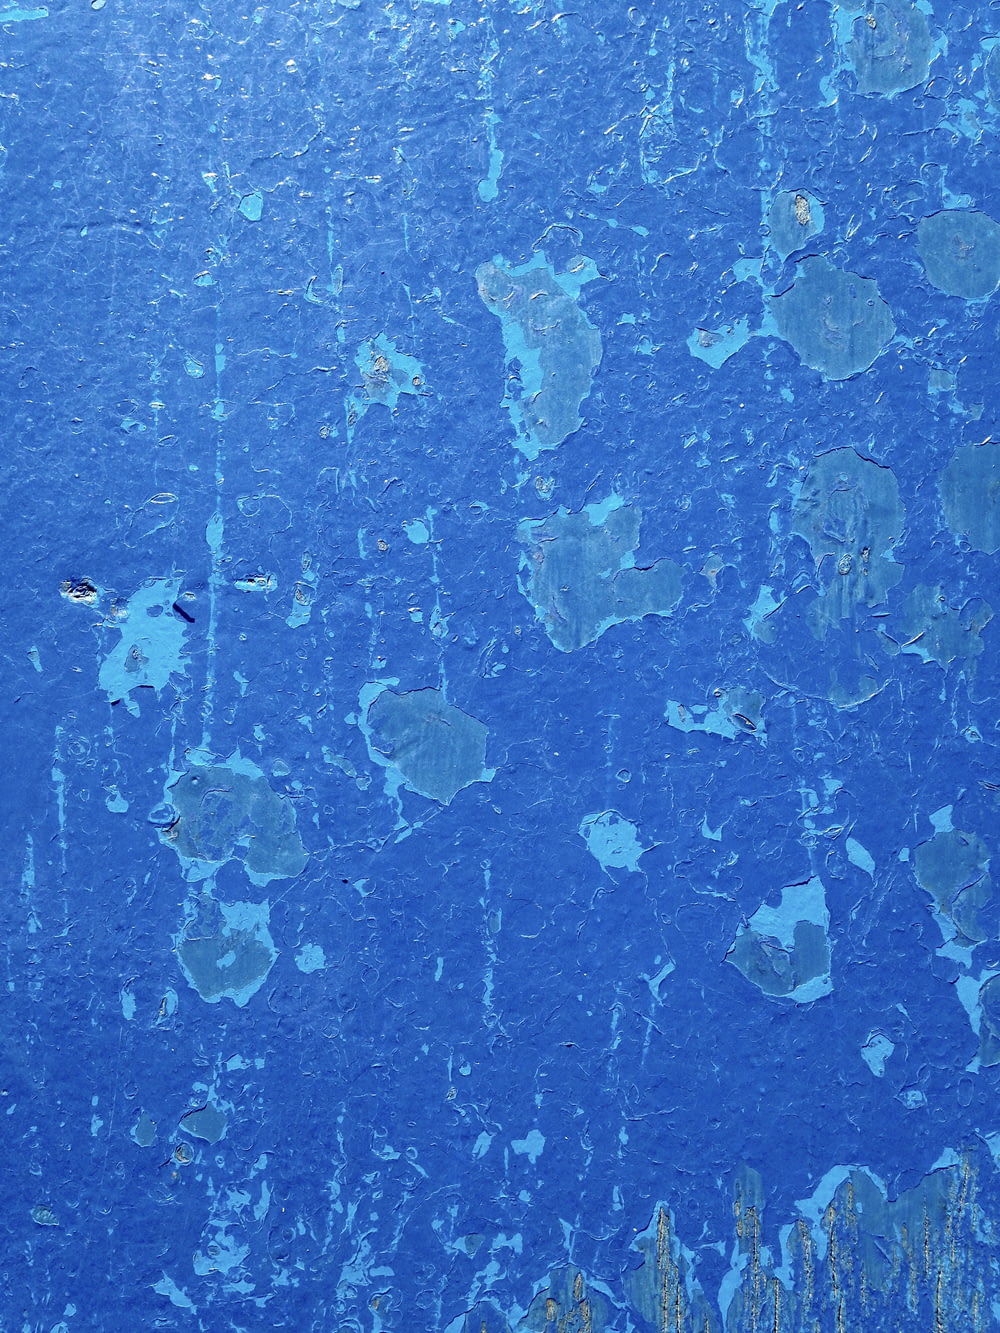 塗装されたような青い壁のイメージ